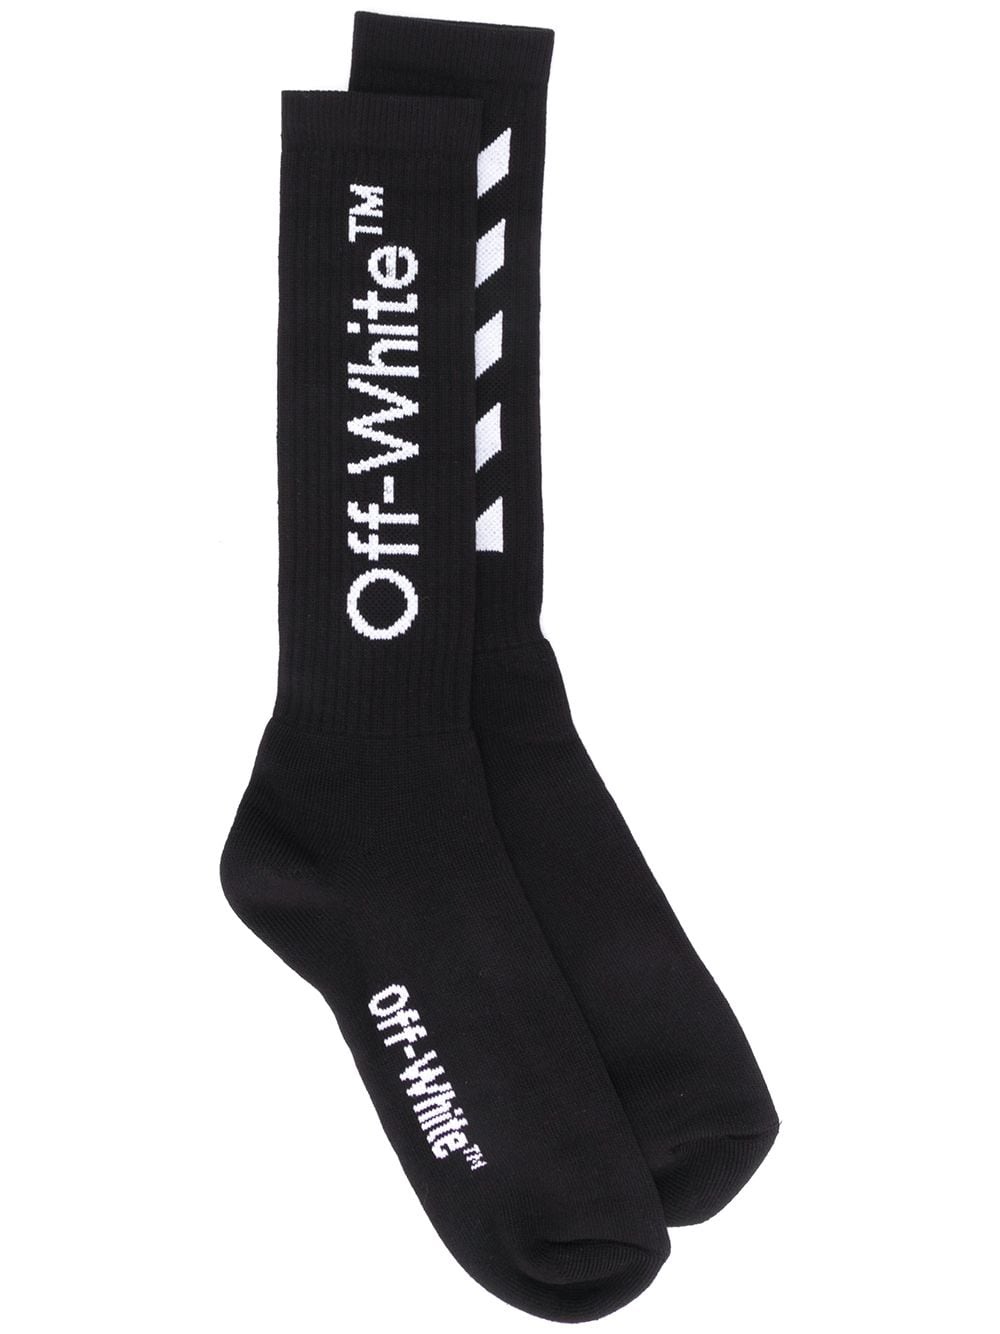 Off-White socks